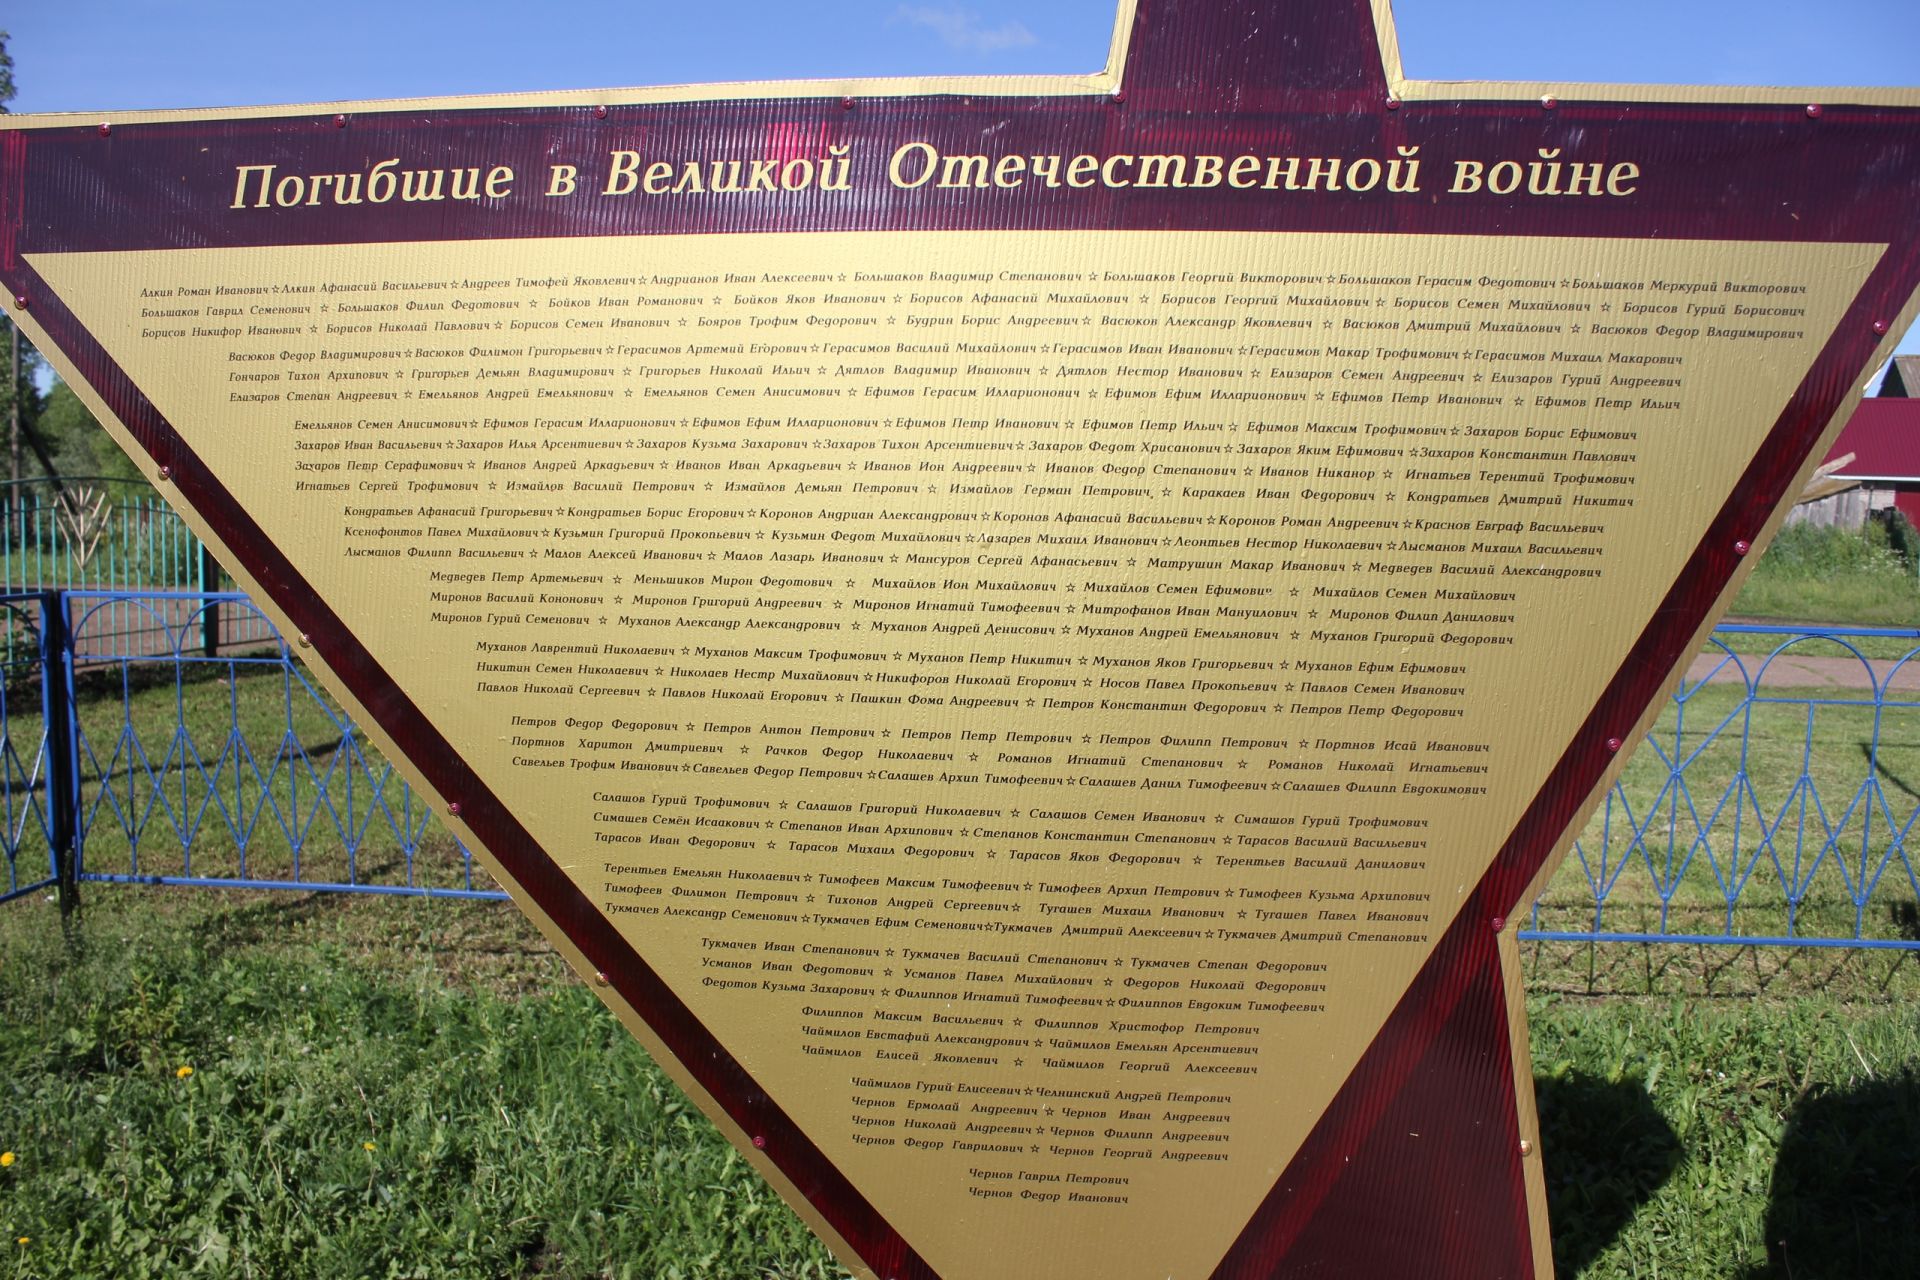 Памятник к 75-летию Победы для жителей села Верхний Багряж стал неприятной неожиданностью